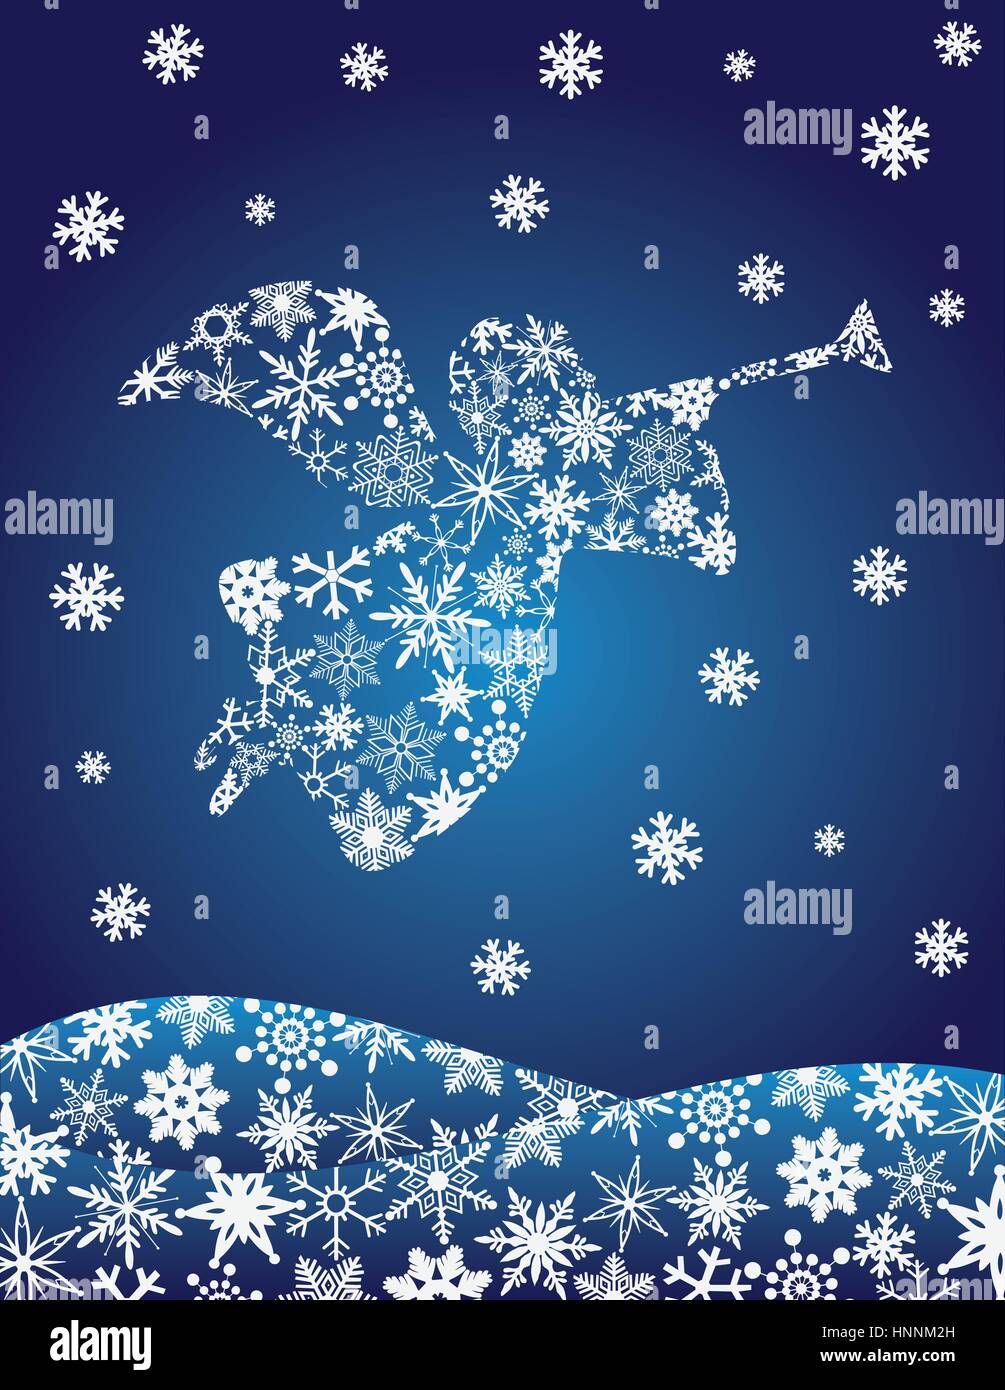 Weihnachtsengel mit Trompete Silhouette mit Schneeflocken-Illustration Stock Vektor